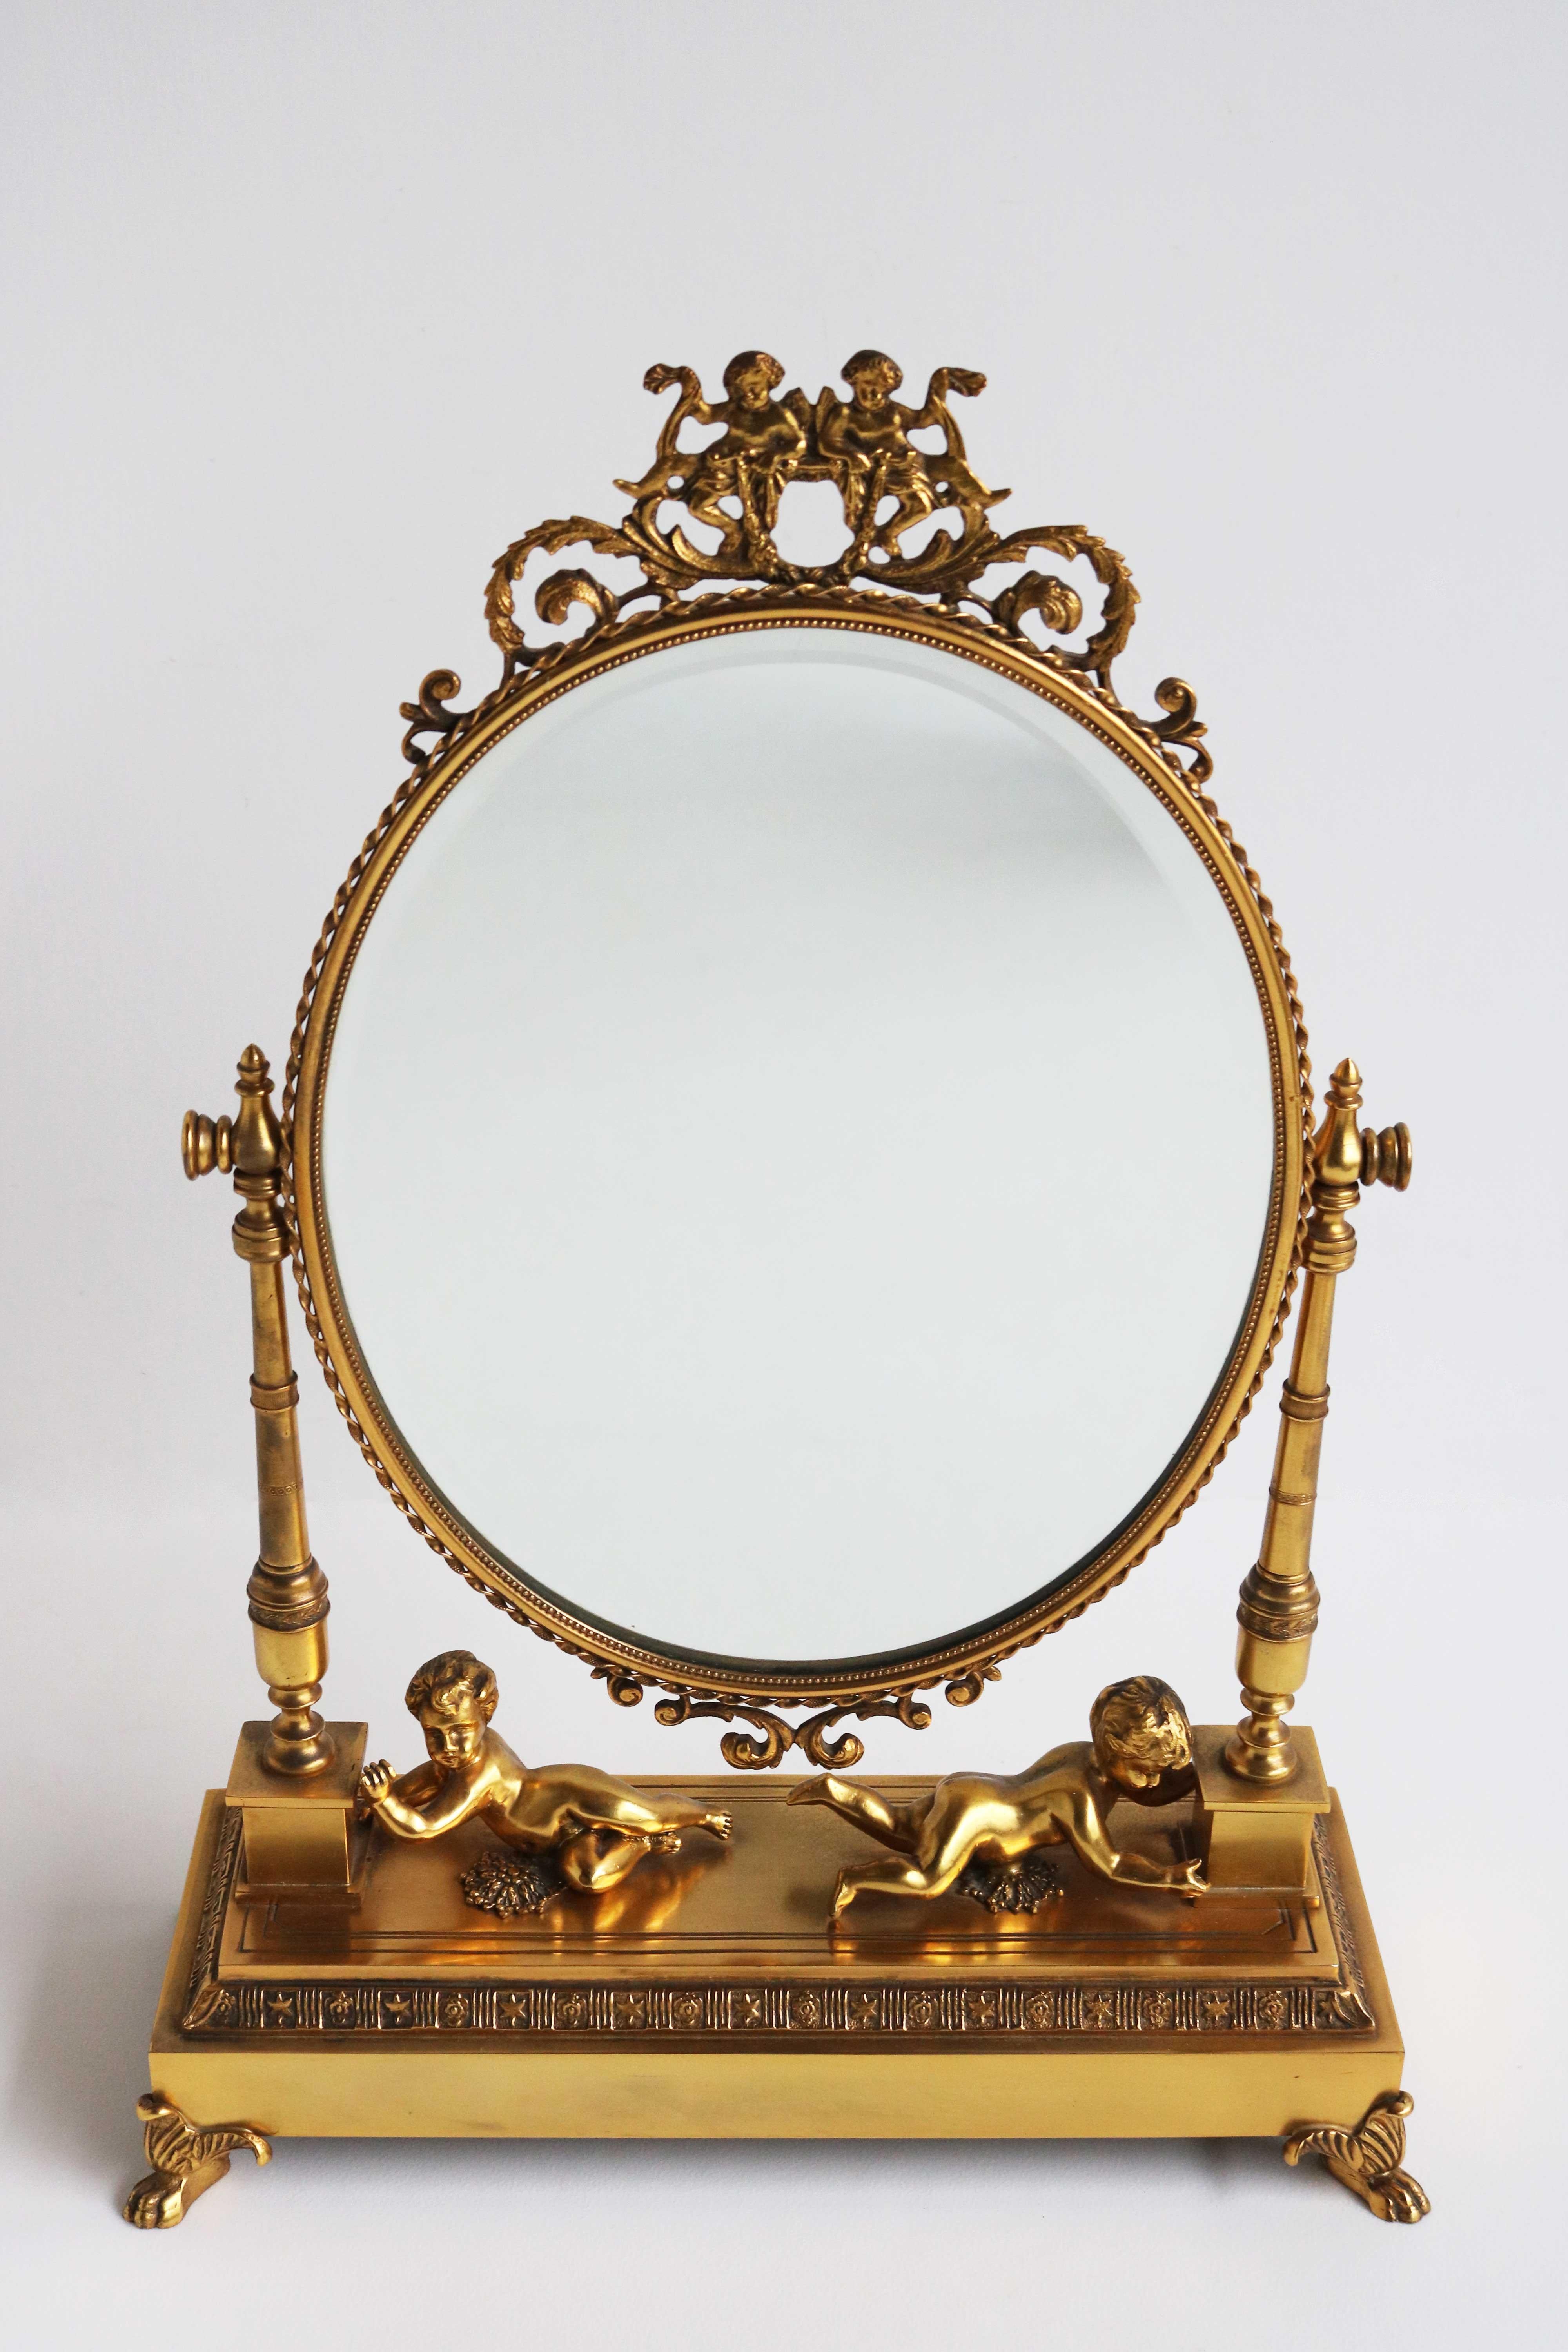 Schöner antiker französischer vergoldeter Bronzespiegel / Kosmetikspiegel / Tischspiegel / Tischplattenspiegel, mit schwenkbarem facettiertem ovalem Spiegel und Putten, um 1880-1900

Ein luxuriöser Schminktischspiegel aus vergoldeter Bronze des